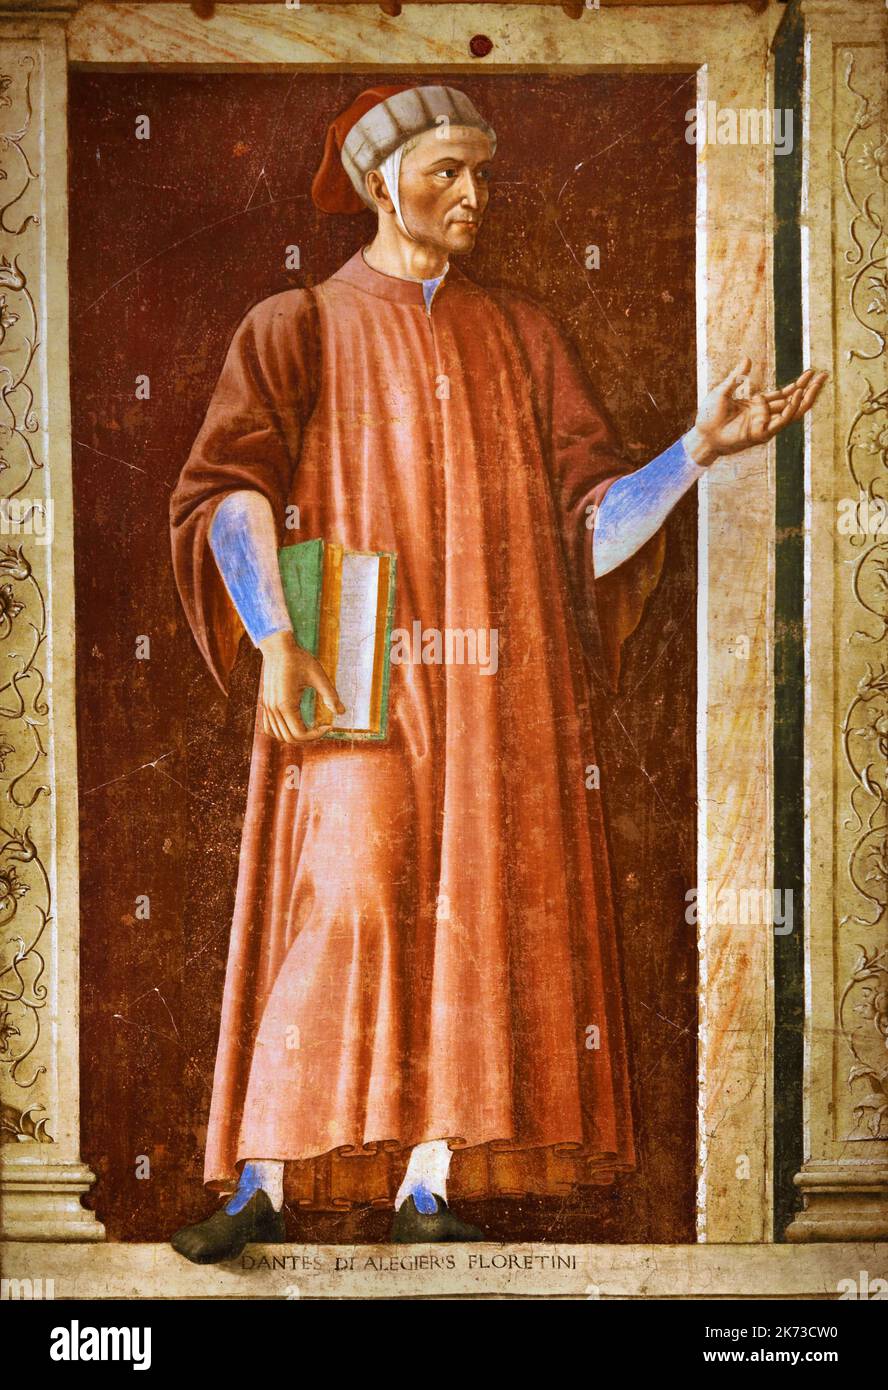 La fresque de Dante Alighieri,1450, peinte par Andrea del Castagno,1420 - 1457, Florence, Italie, Dante Alighieri était un Italien, poète, écrivain et philosophe, sa Divine Comédie, ) Banque D'Images